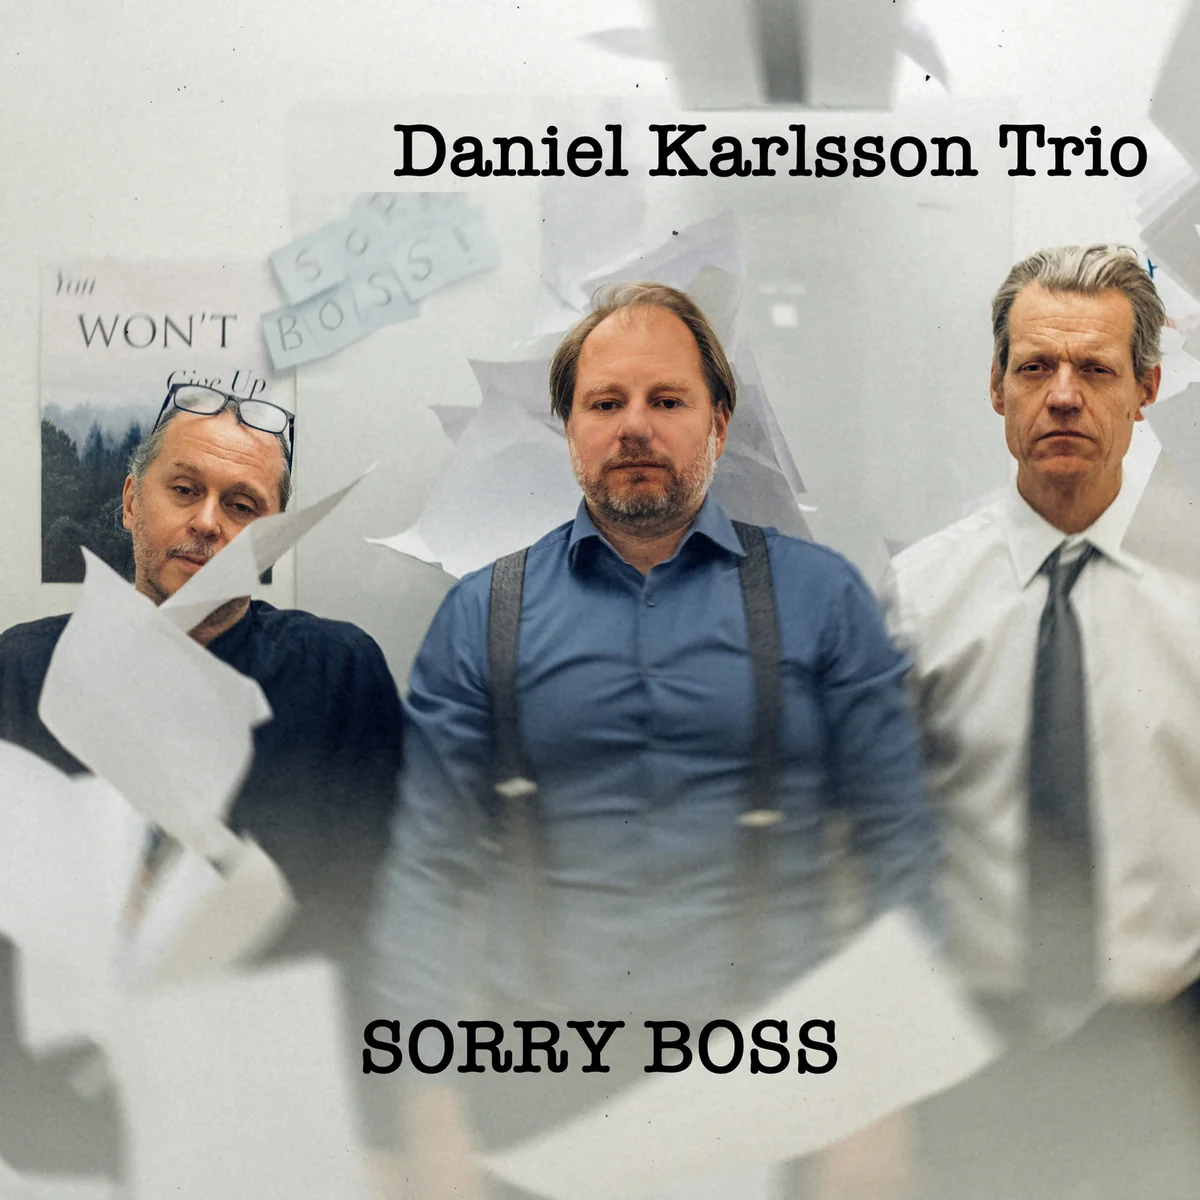 Daniel Karlsson Trio: Sorry Boss LP